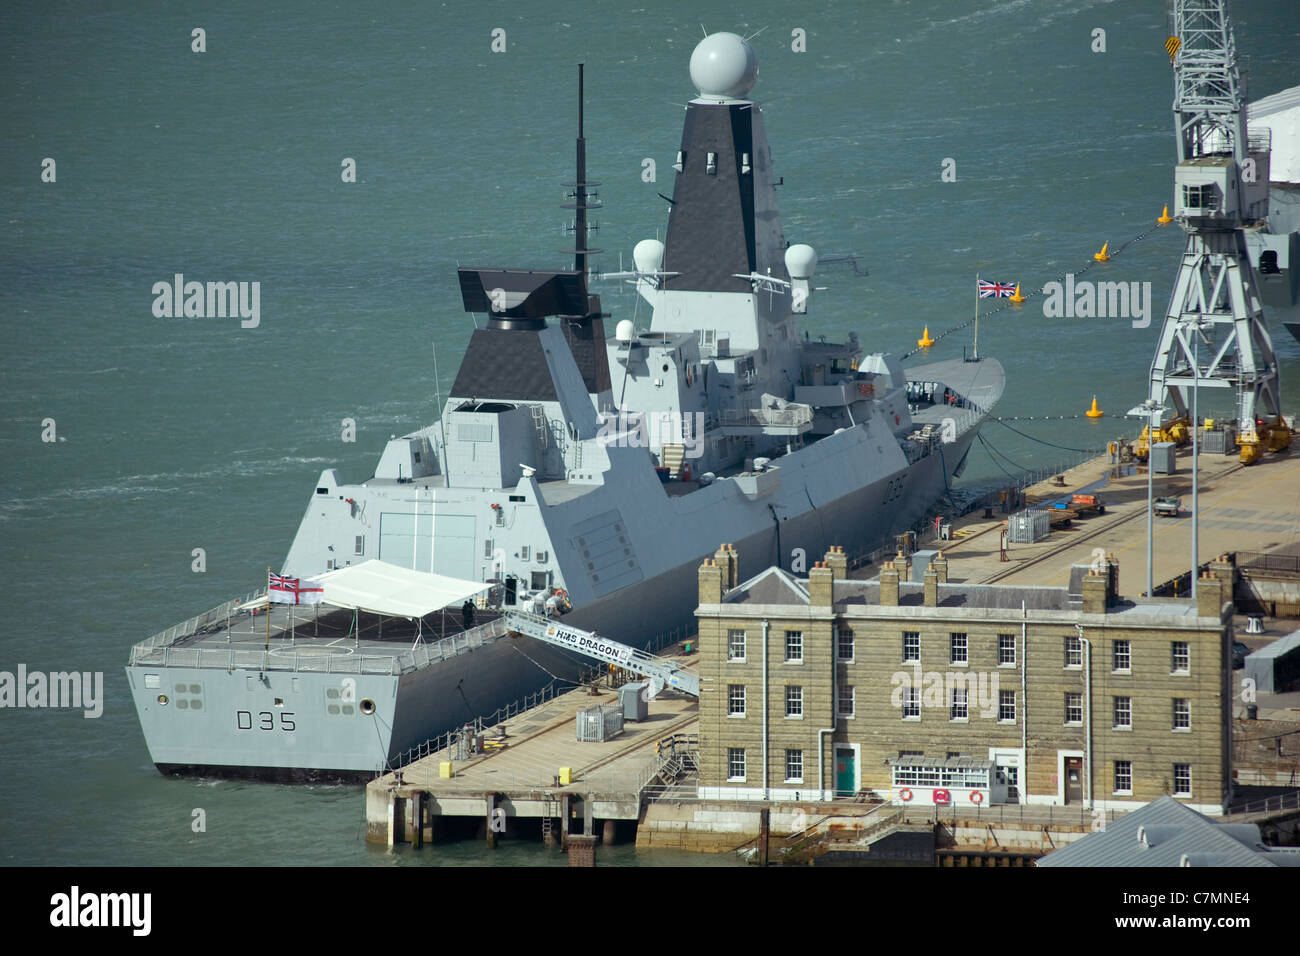 Le HMS Dragon destroyer Type 45 à quai dans le port de Portsmouth Banque D'Images